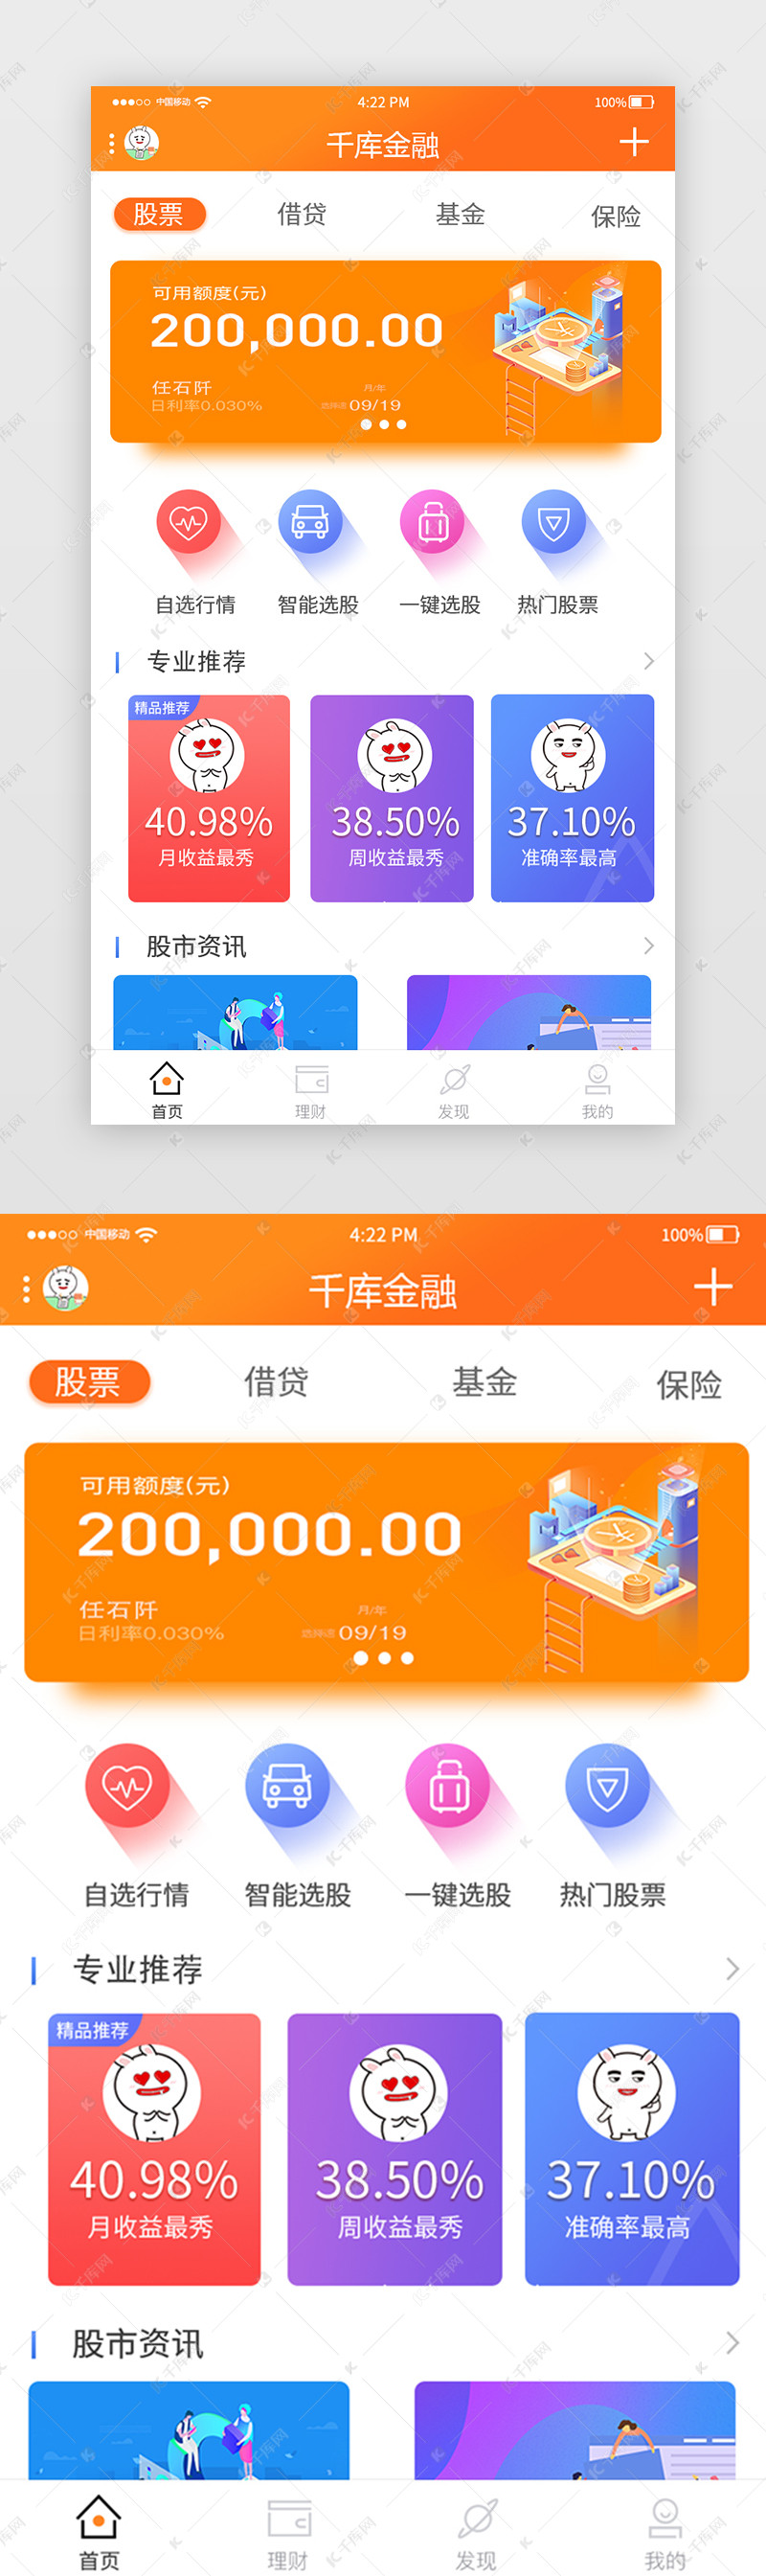 橙色金融理财app主界面